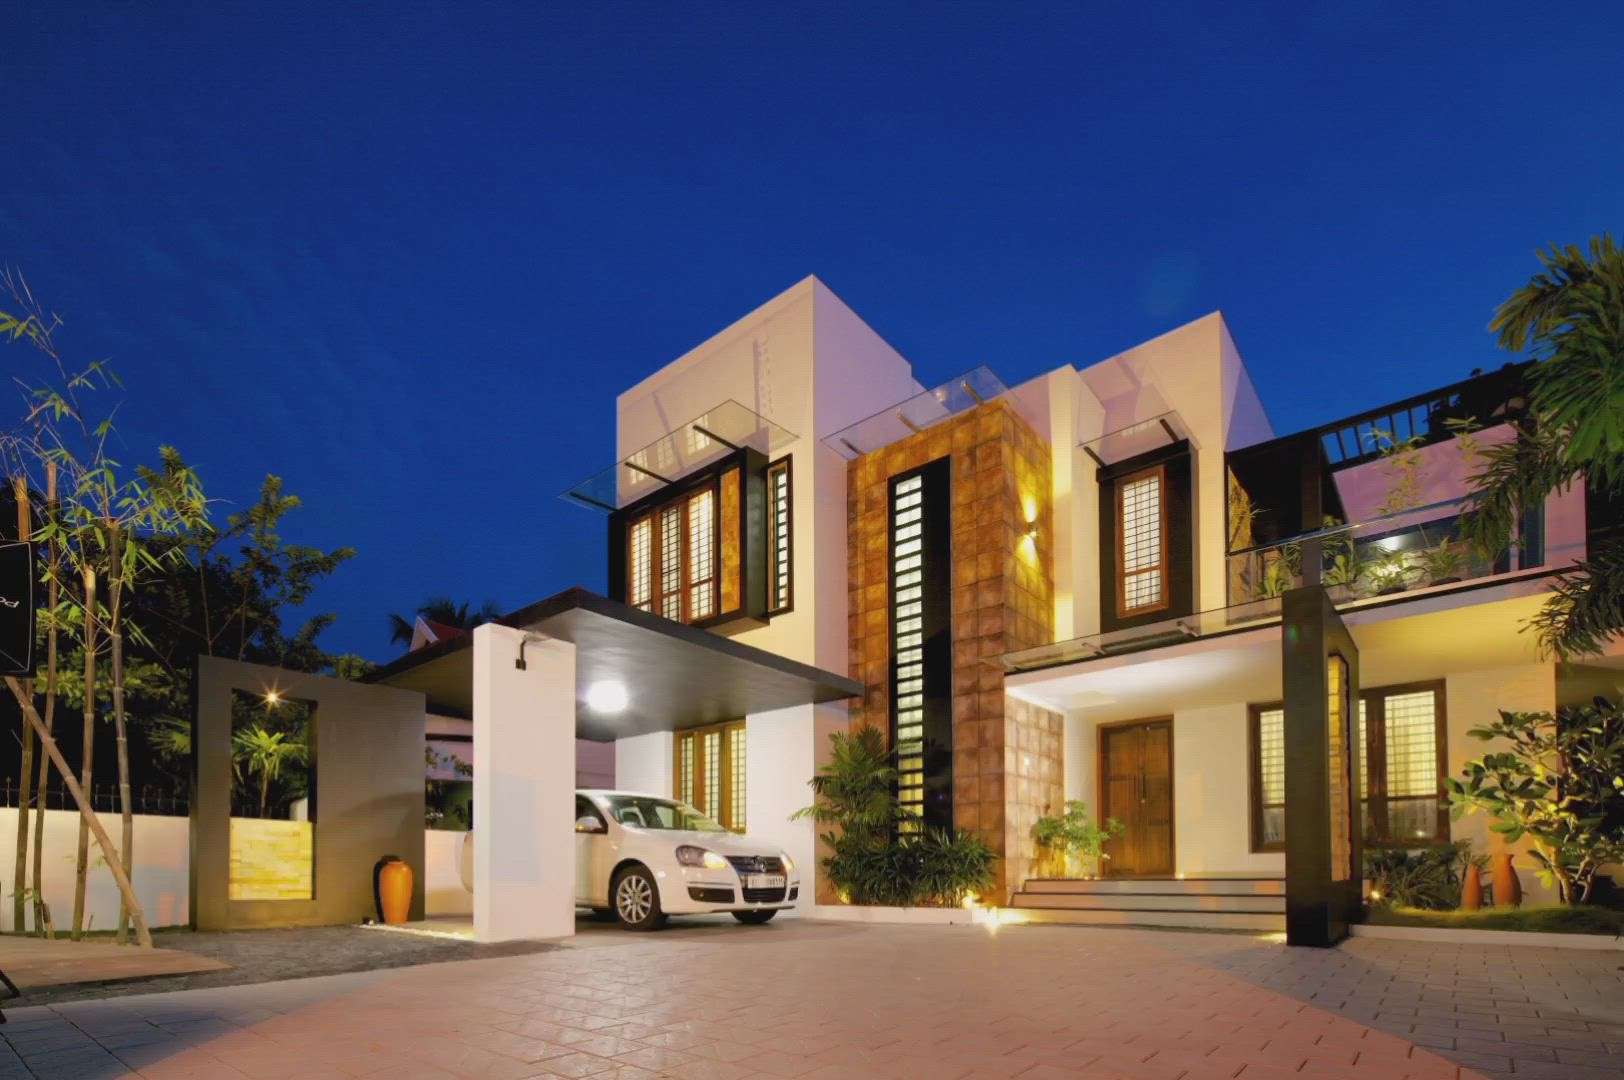 5bhk residence at trivandrum.
@gmail.com #homedecorindia